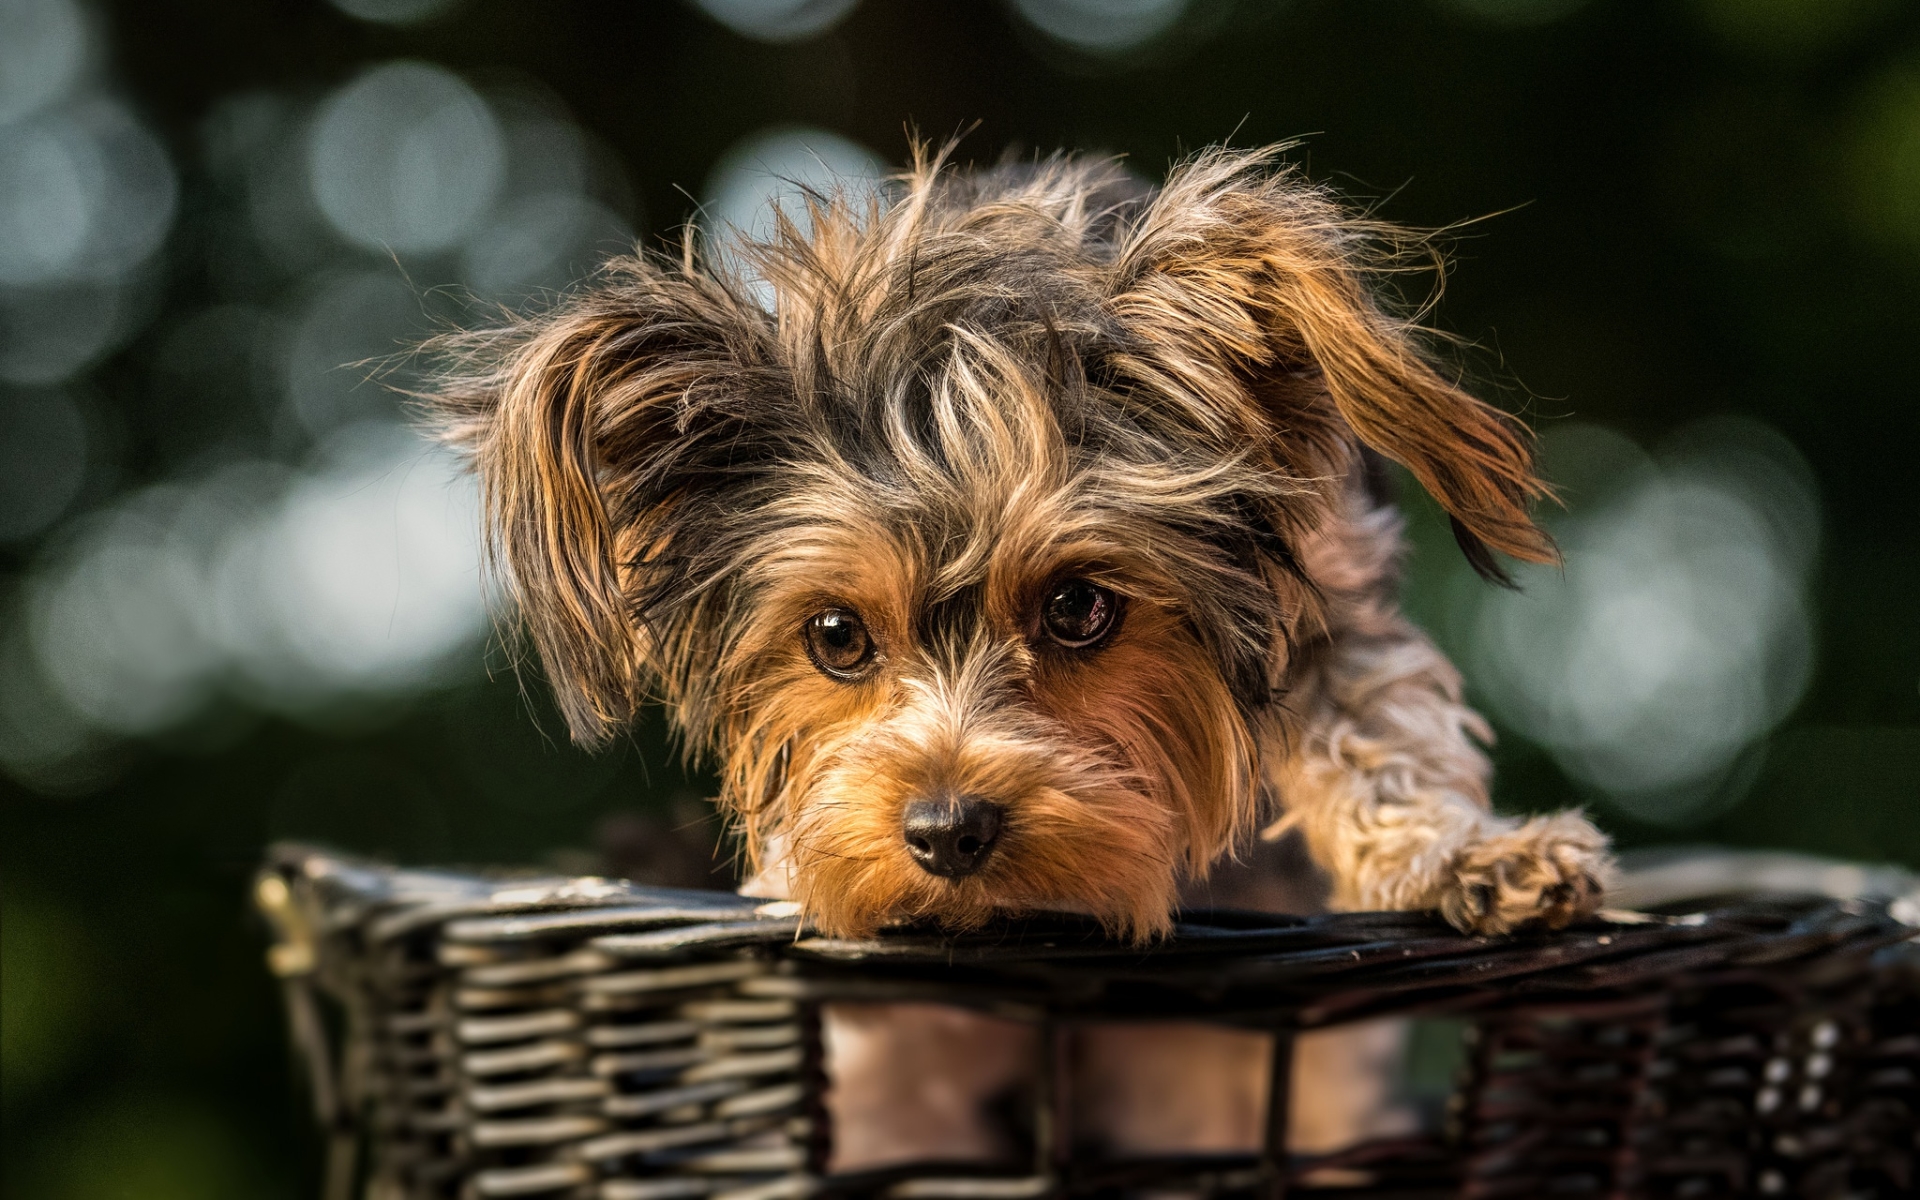 Puppy in a Basket